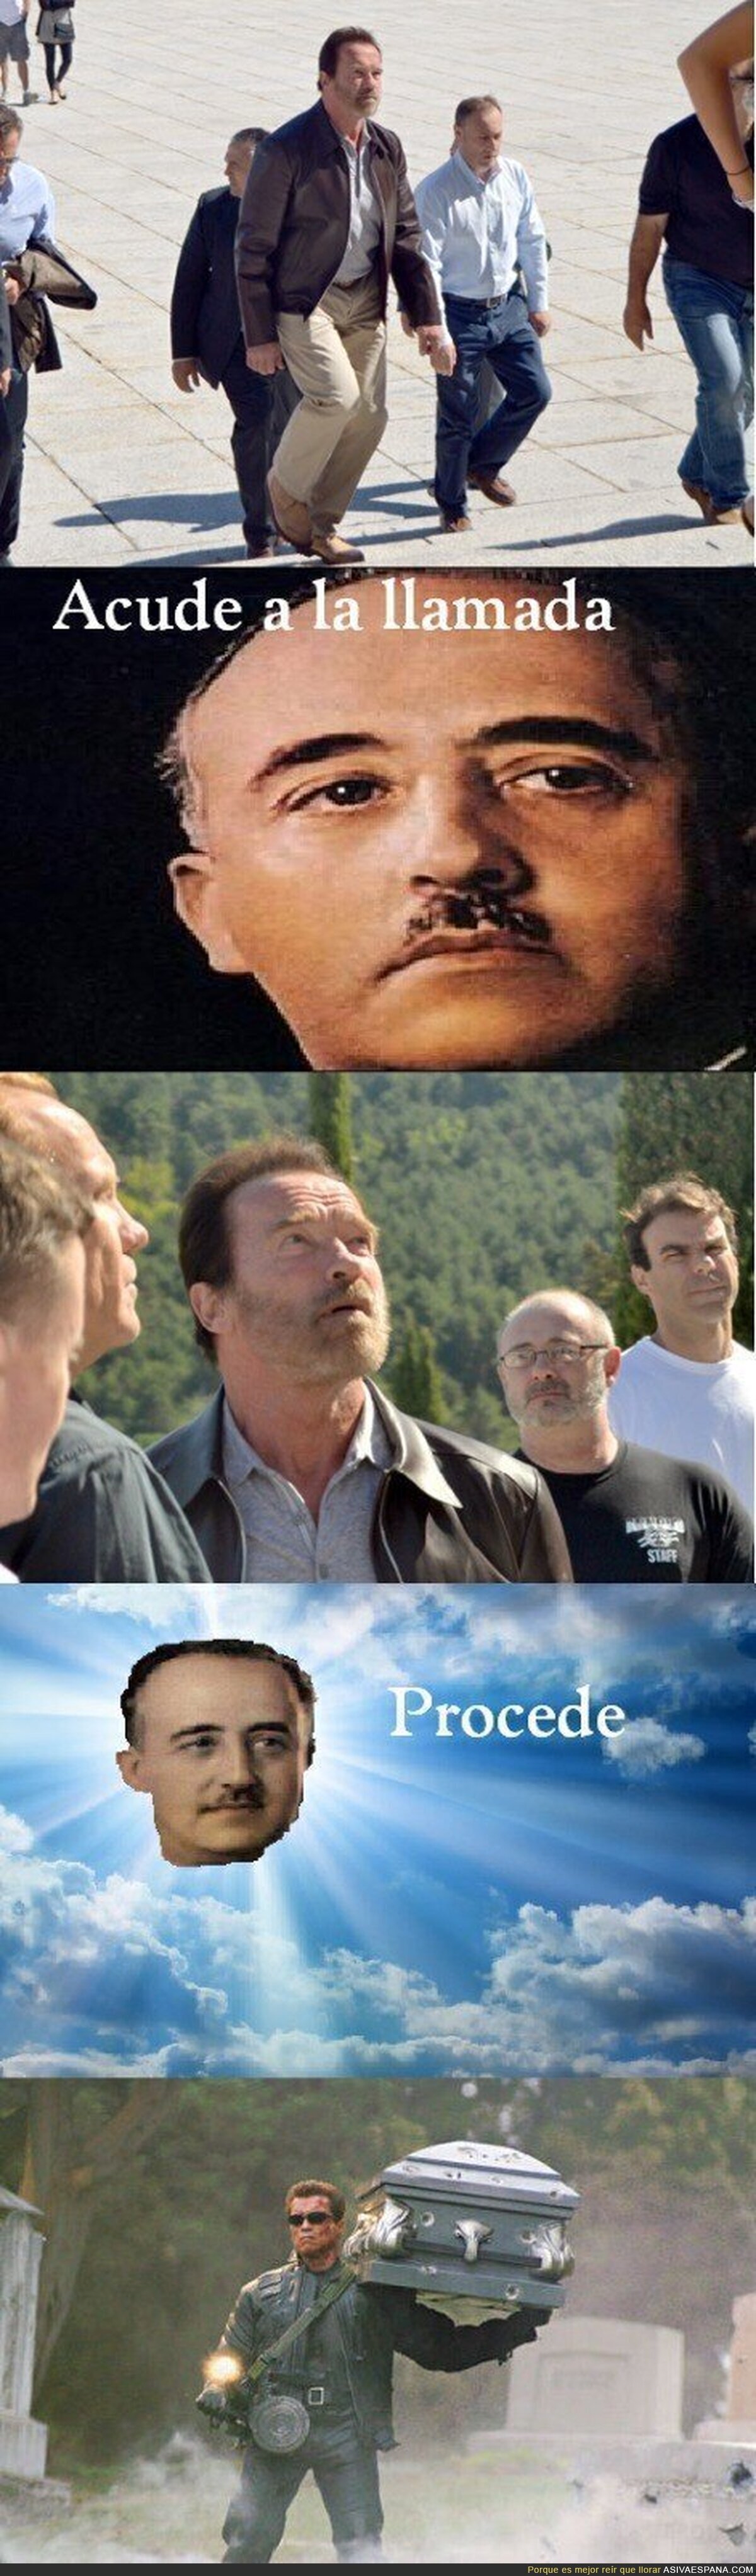 Schwarzenegger volverá al Valle de los Caídos para salvar al Caudillo